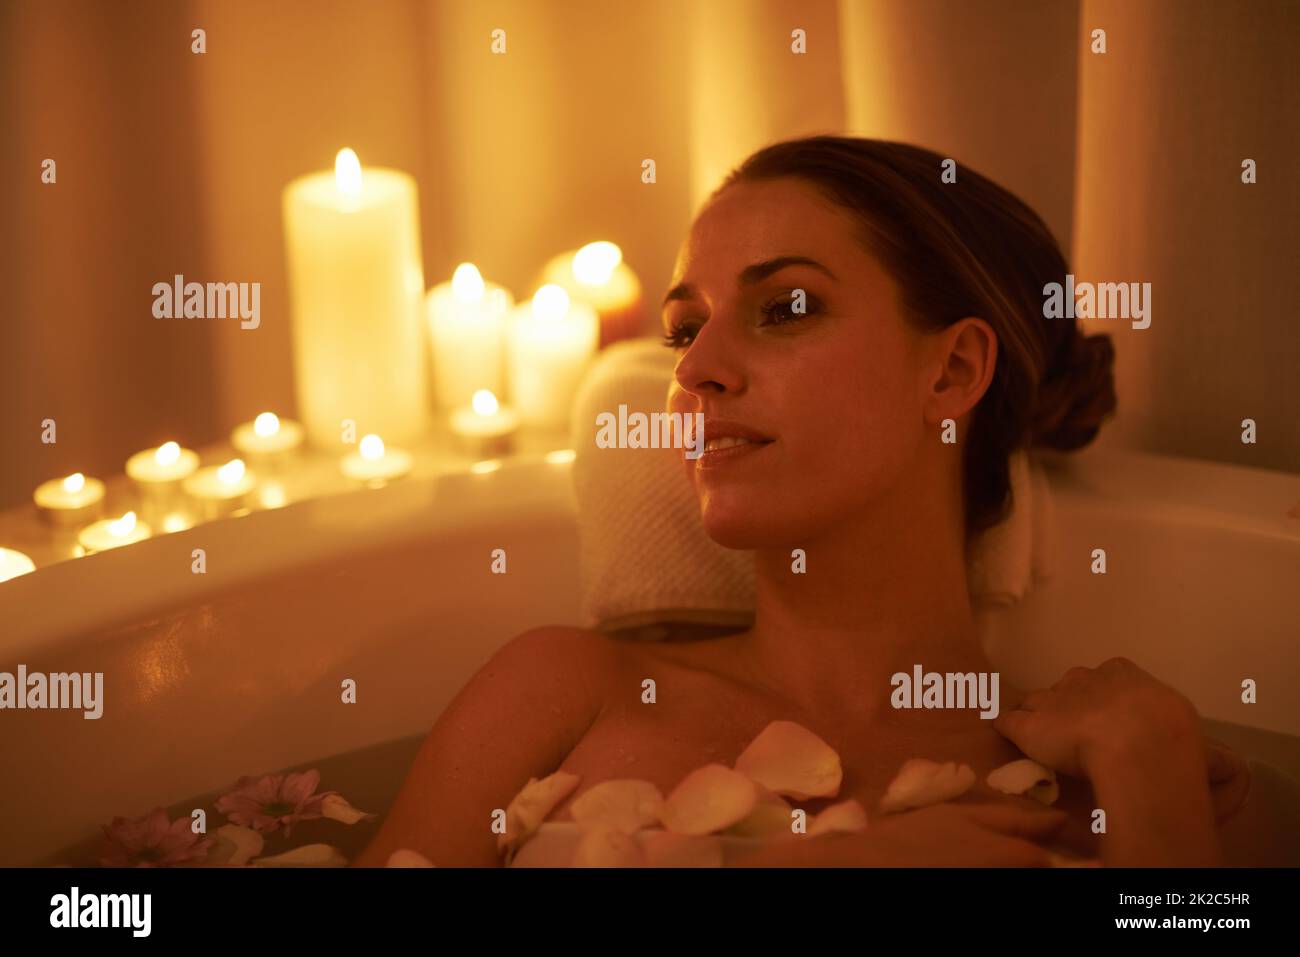 Apaisé par l'ambiance et un bain chaud. Photo courte d'une femme magnifique se détendant dans un bain aux chandelles. Banque D'Images